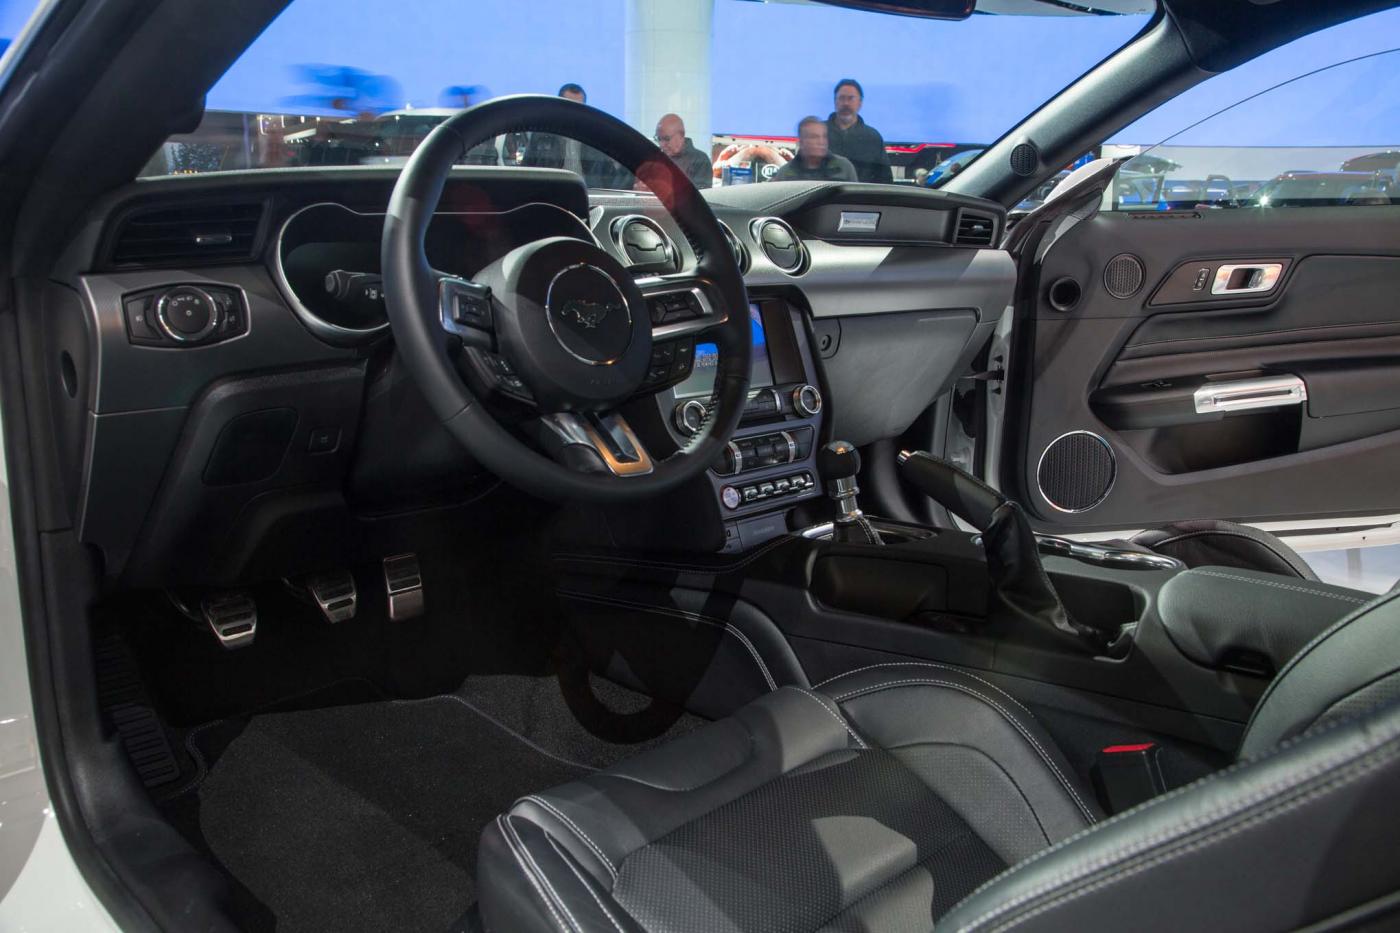 2018-Mustang-Interior-1.jpg